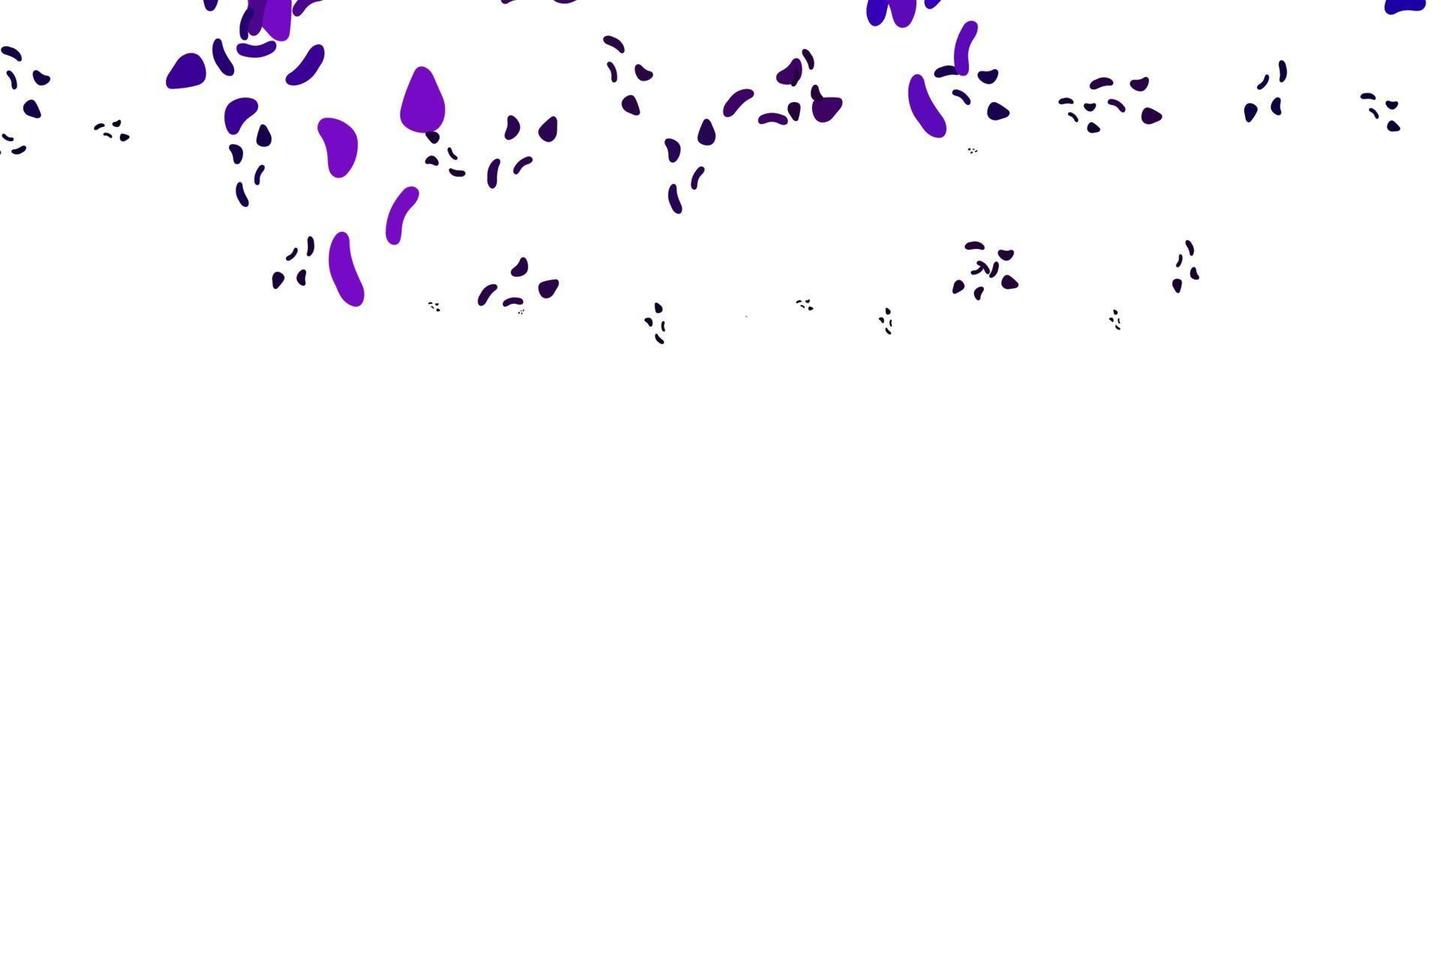 motif vectoriel violet clair avec des formes chaotiques.